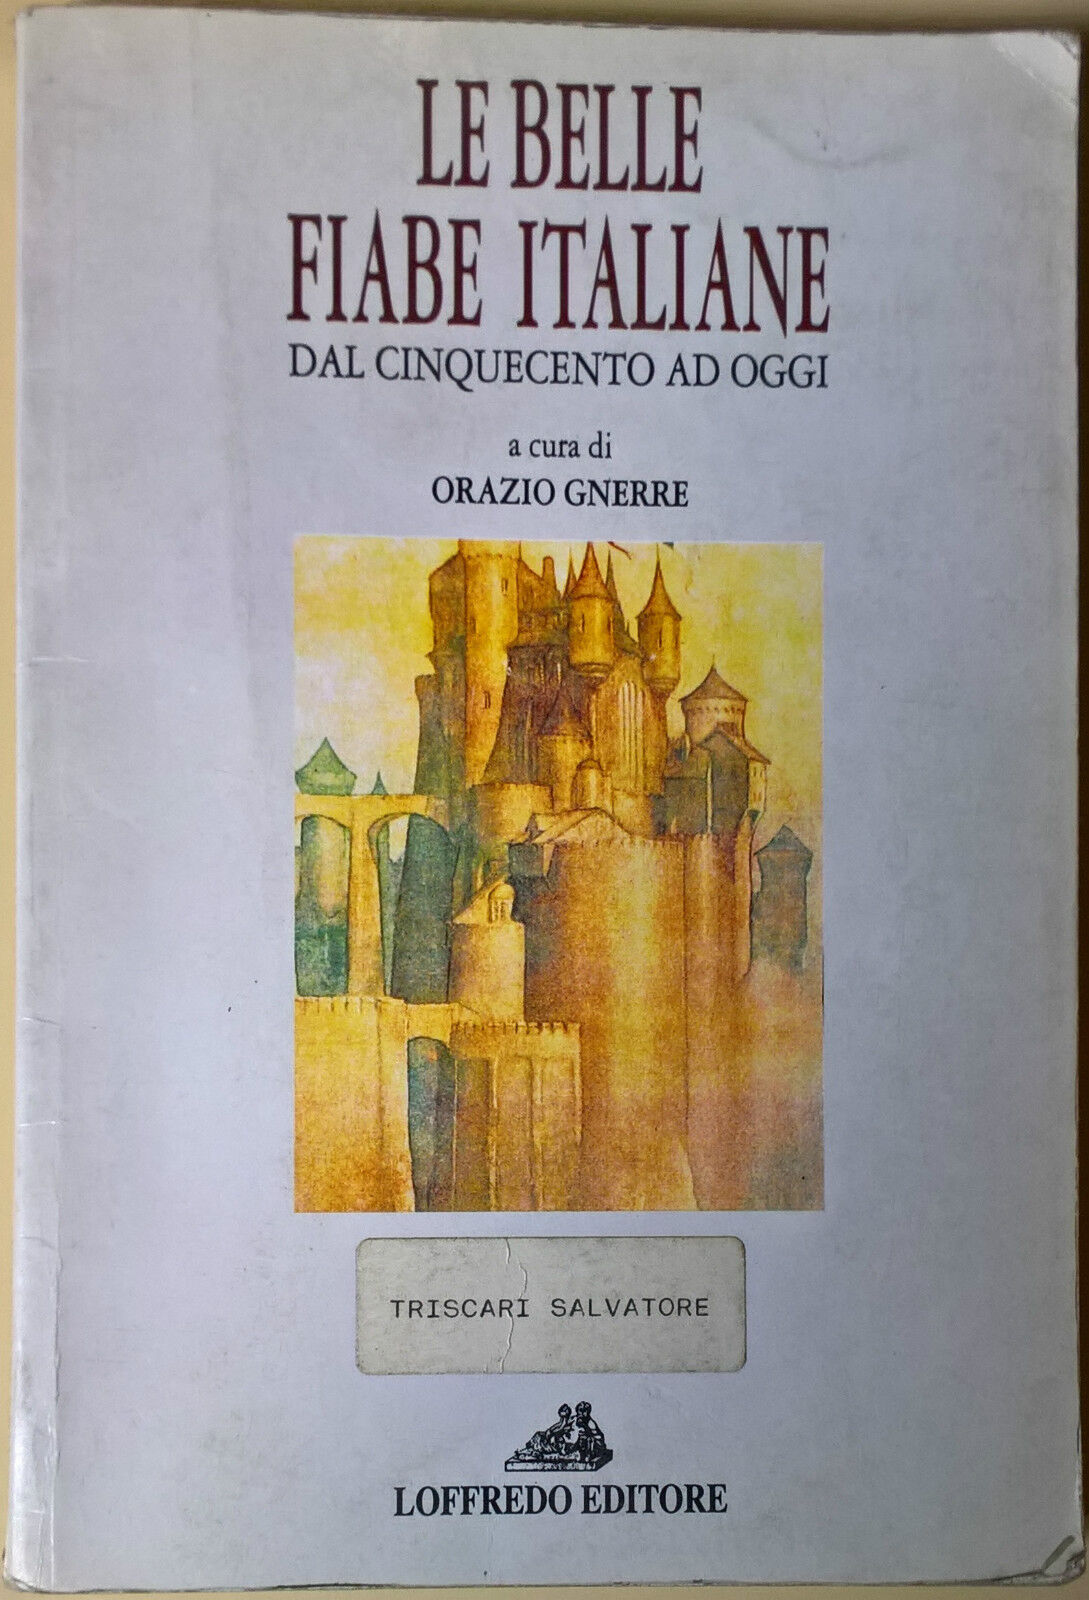 Le belle fiabe italiane dal Cinquecento ad oggi - O. Gnerre - 1995, Loffredo - L libro usato